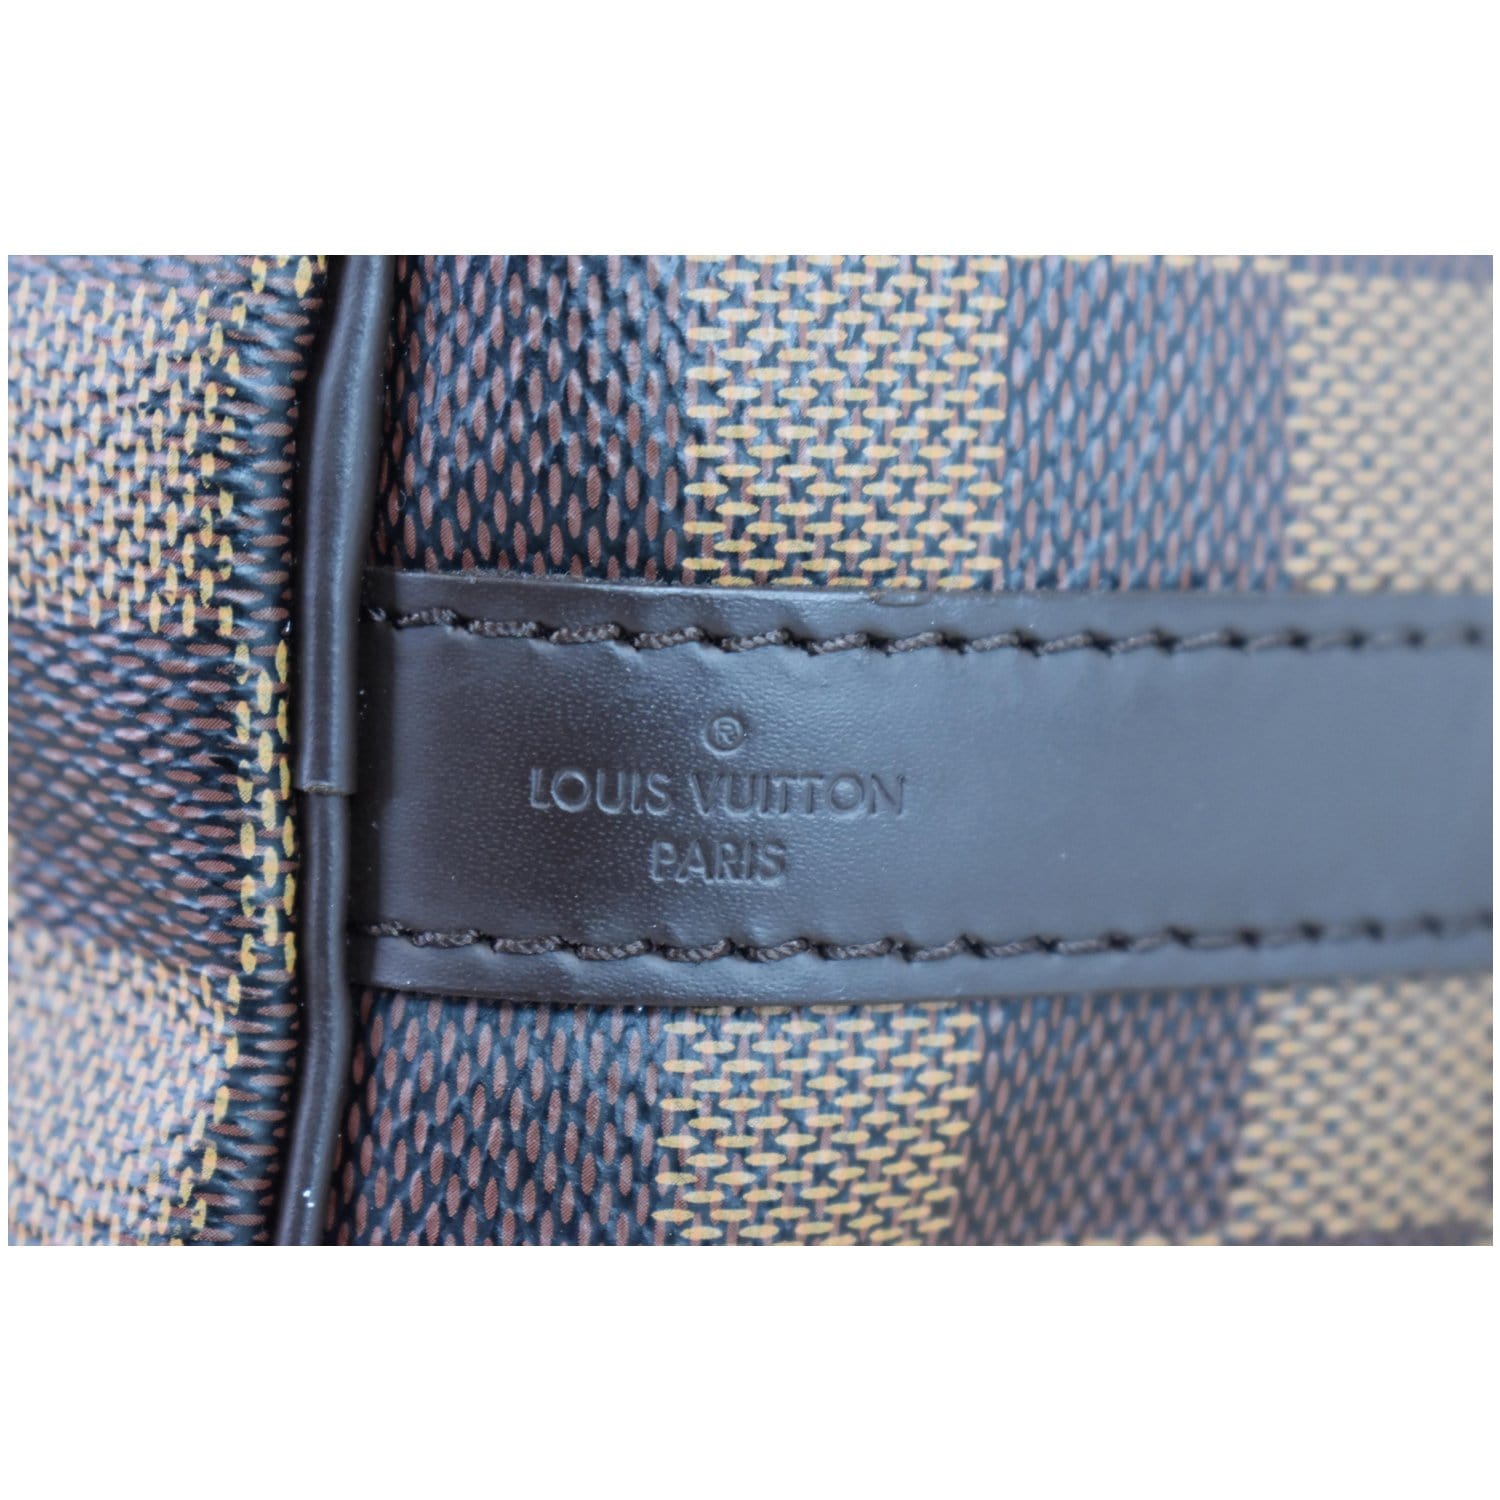 Louis Vuitton Speedy Speedy Bandouli√ Re 25, Brown